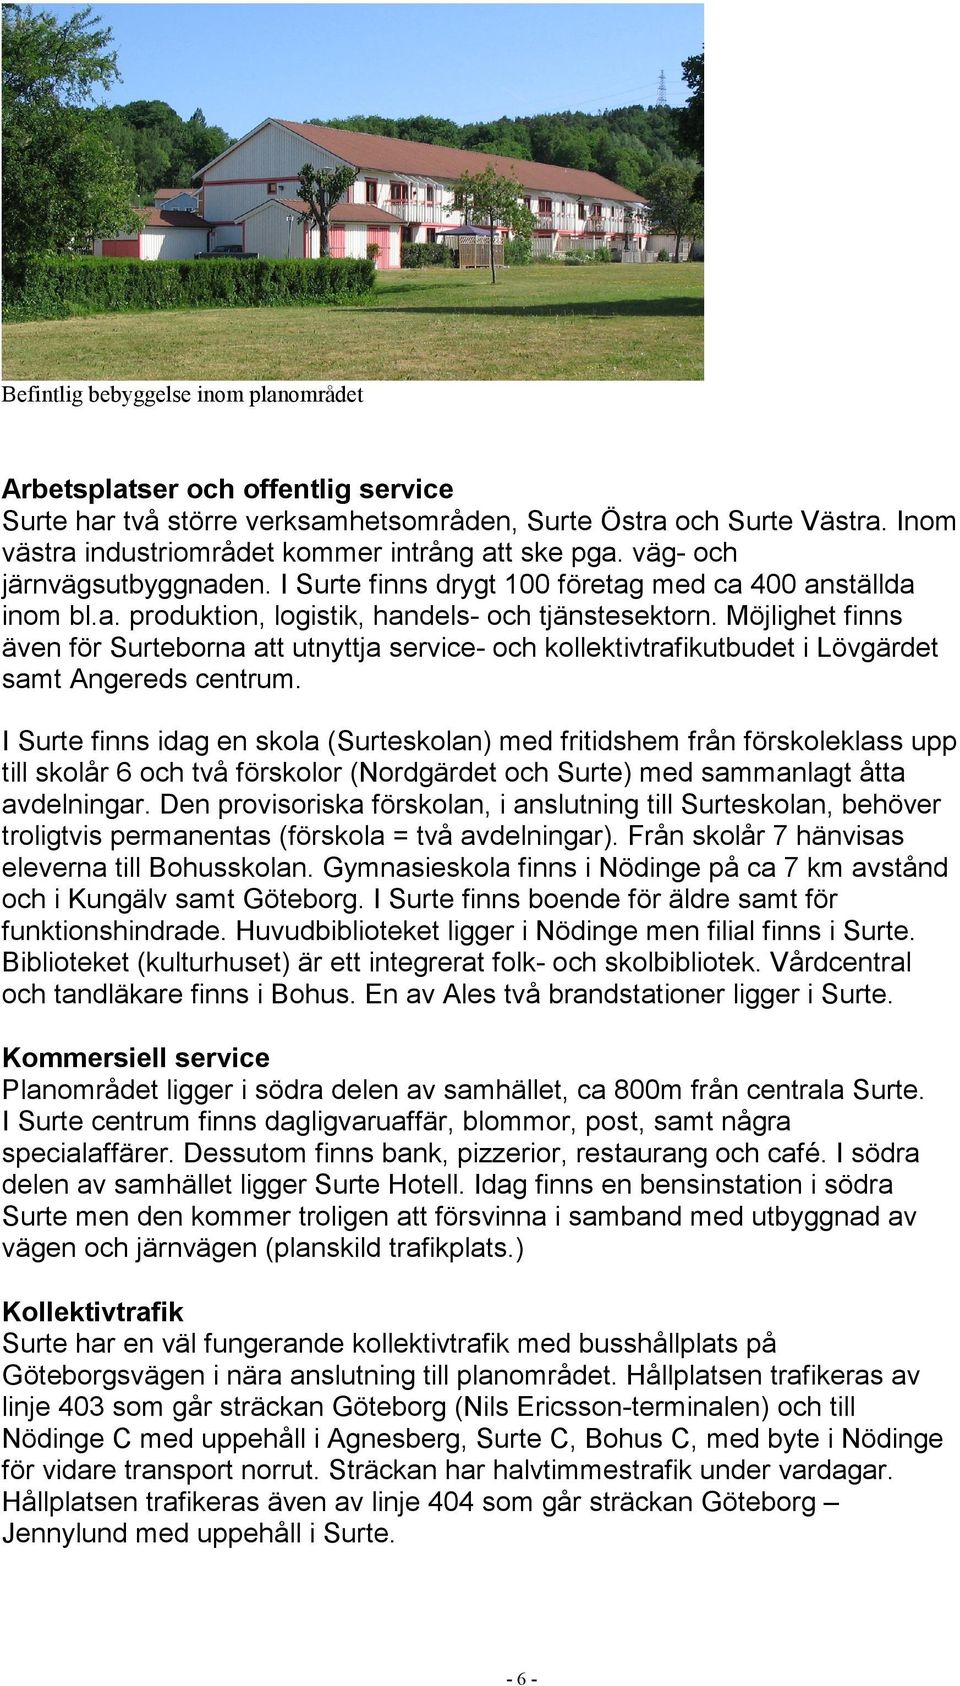 Möjlighet finns även för Surteborna att utnyttja service- och kollektivtrafikutbudet i Lövgärdet samt Angereds centrum.